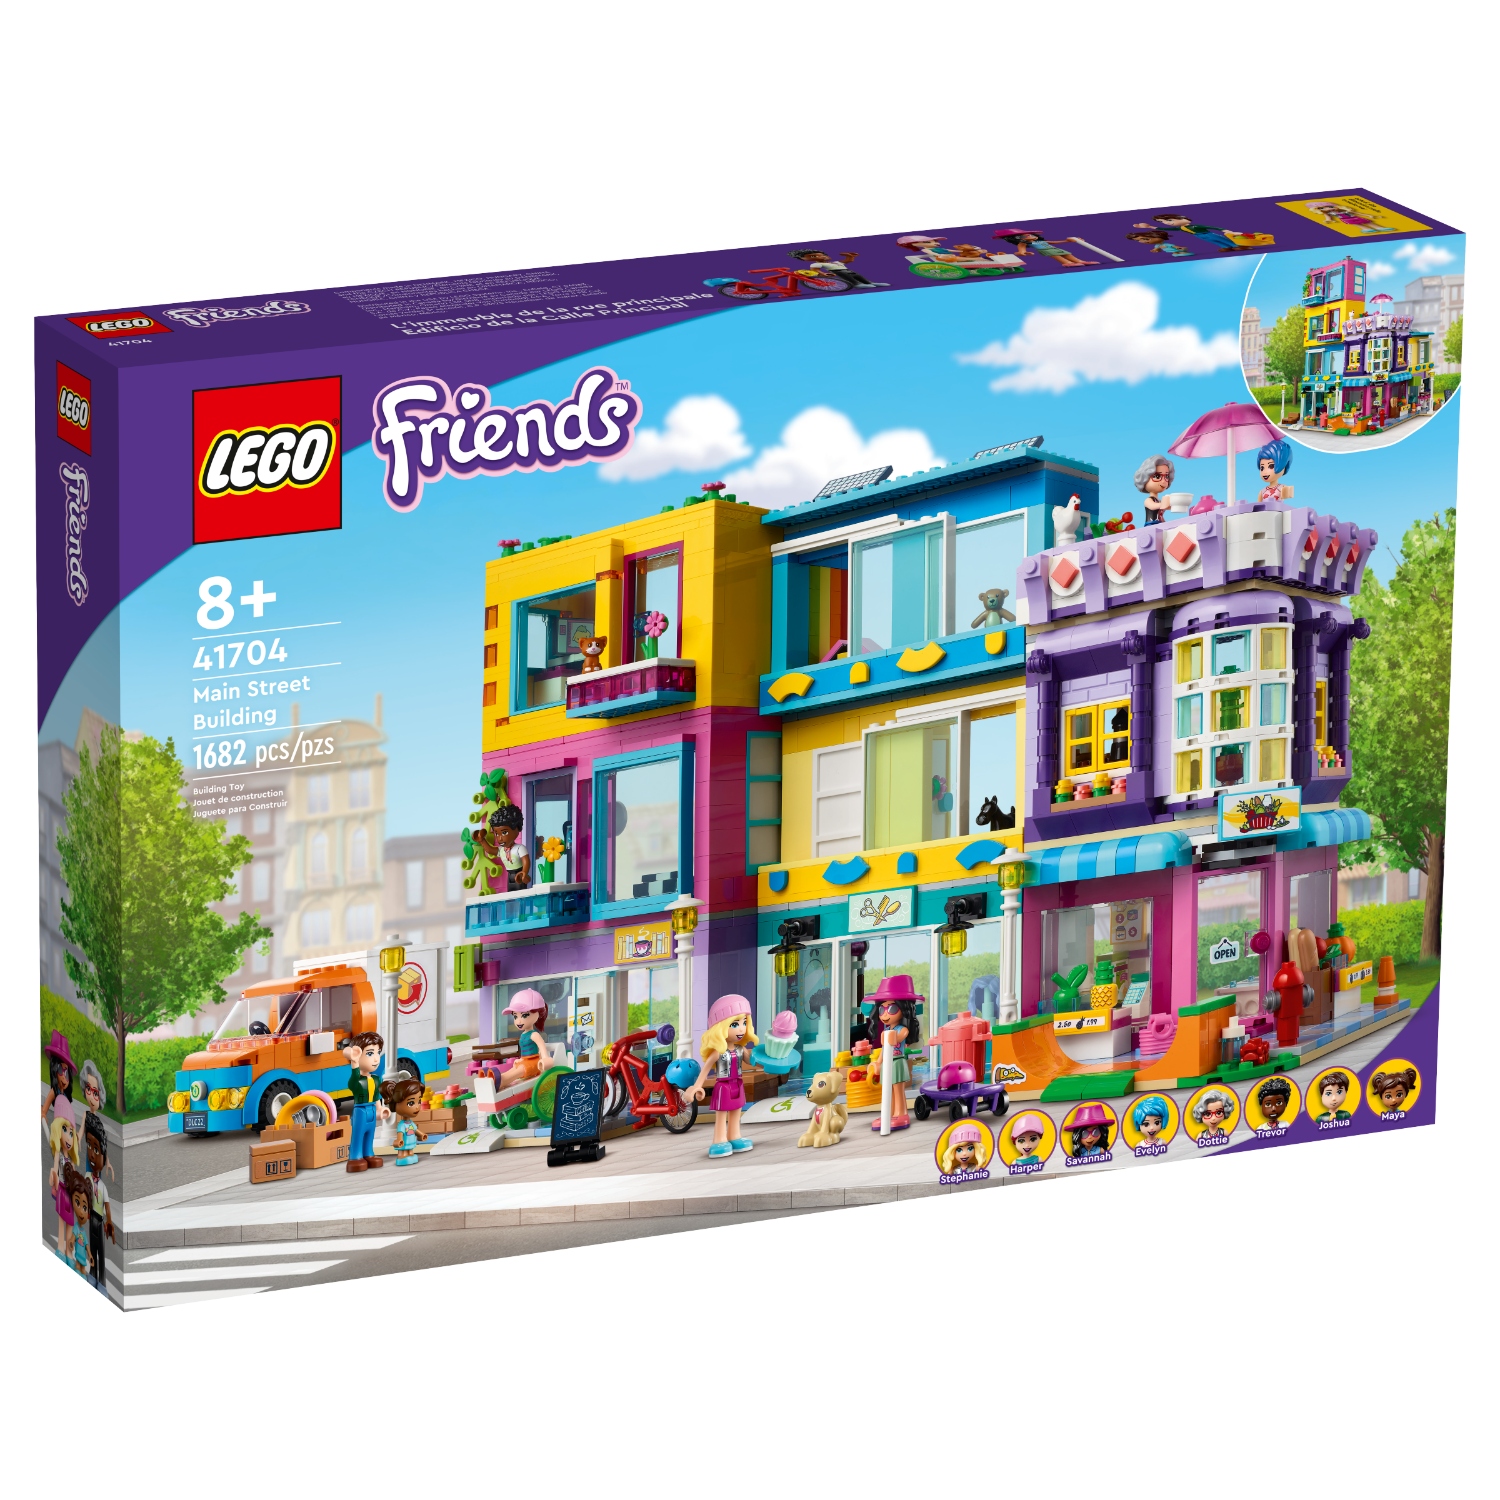 LEGO FRIENDS 41704 HOOFDSTRAATGEBOUW